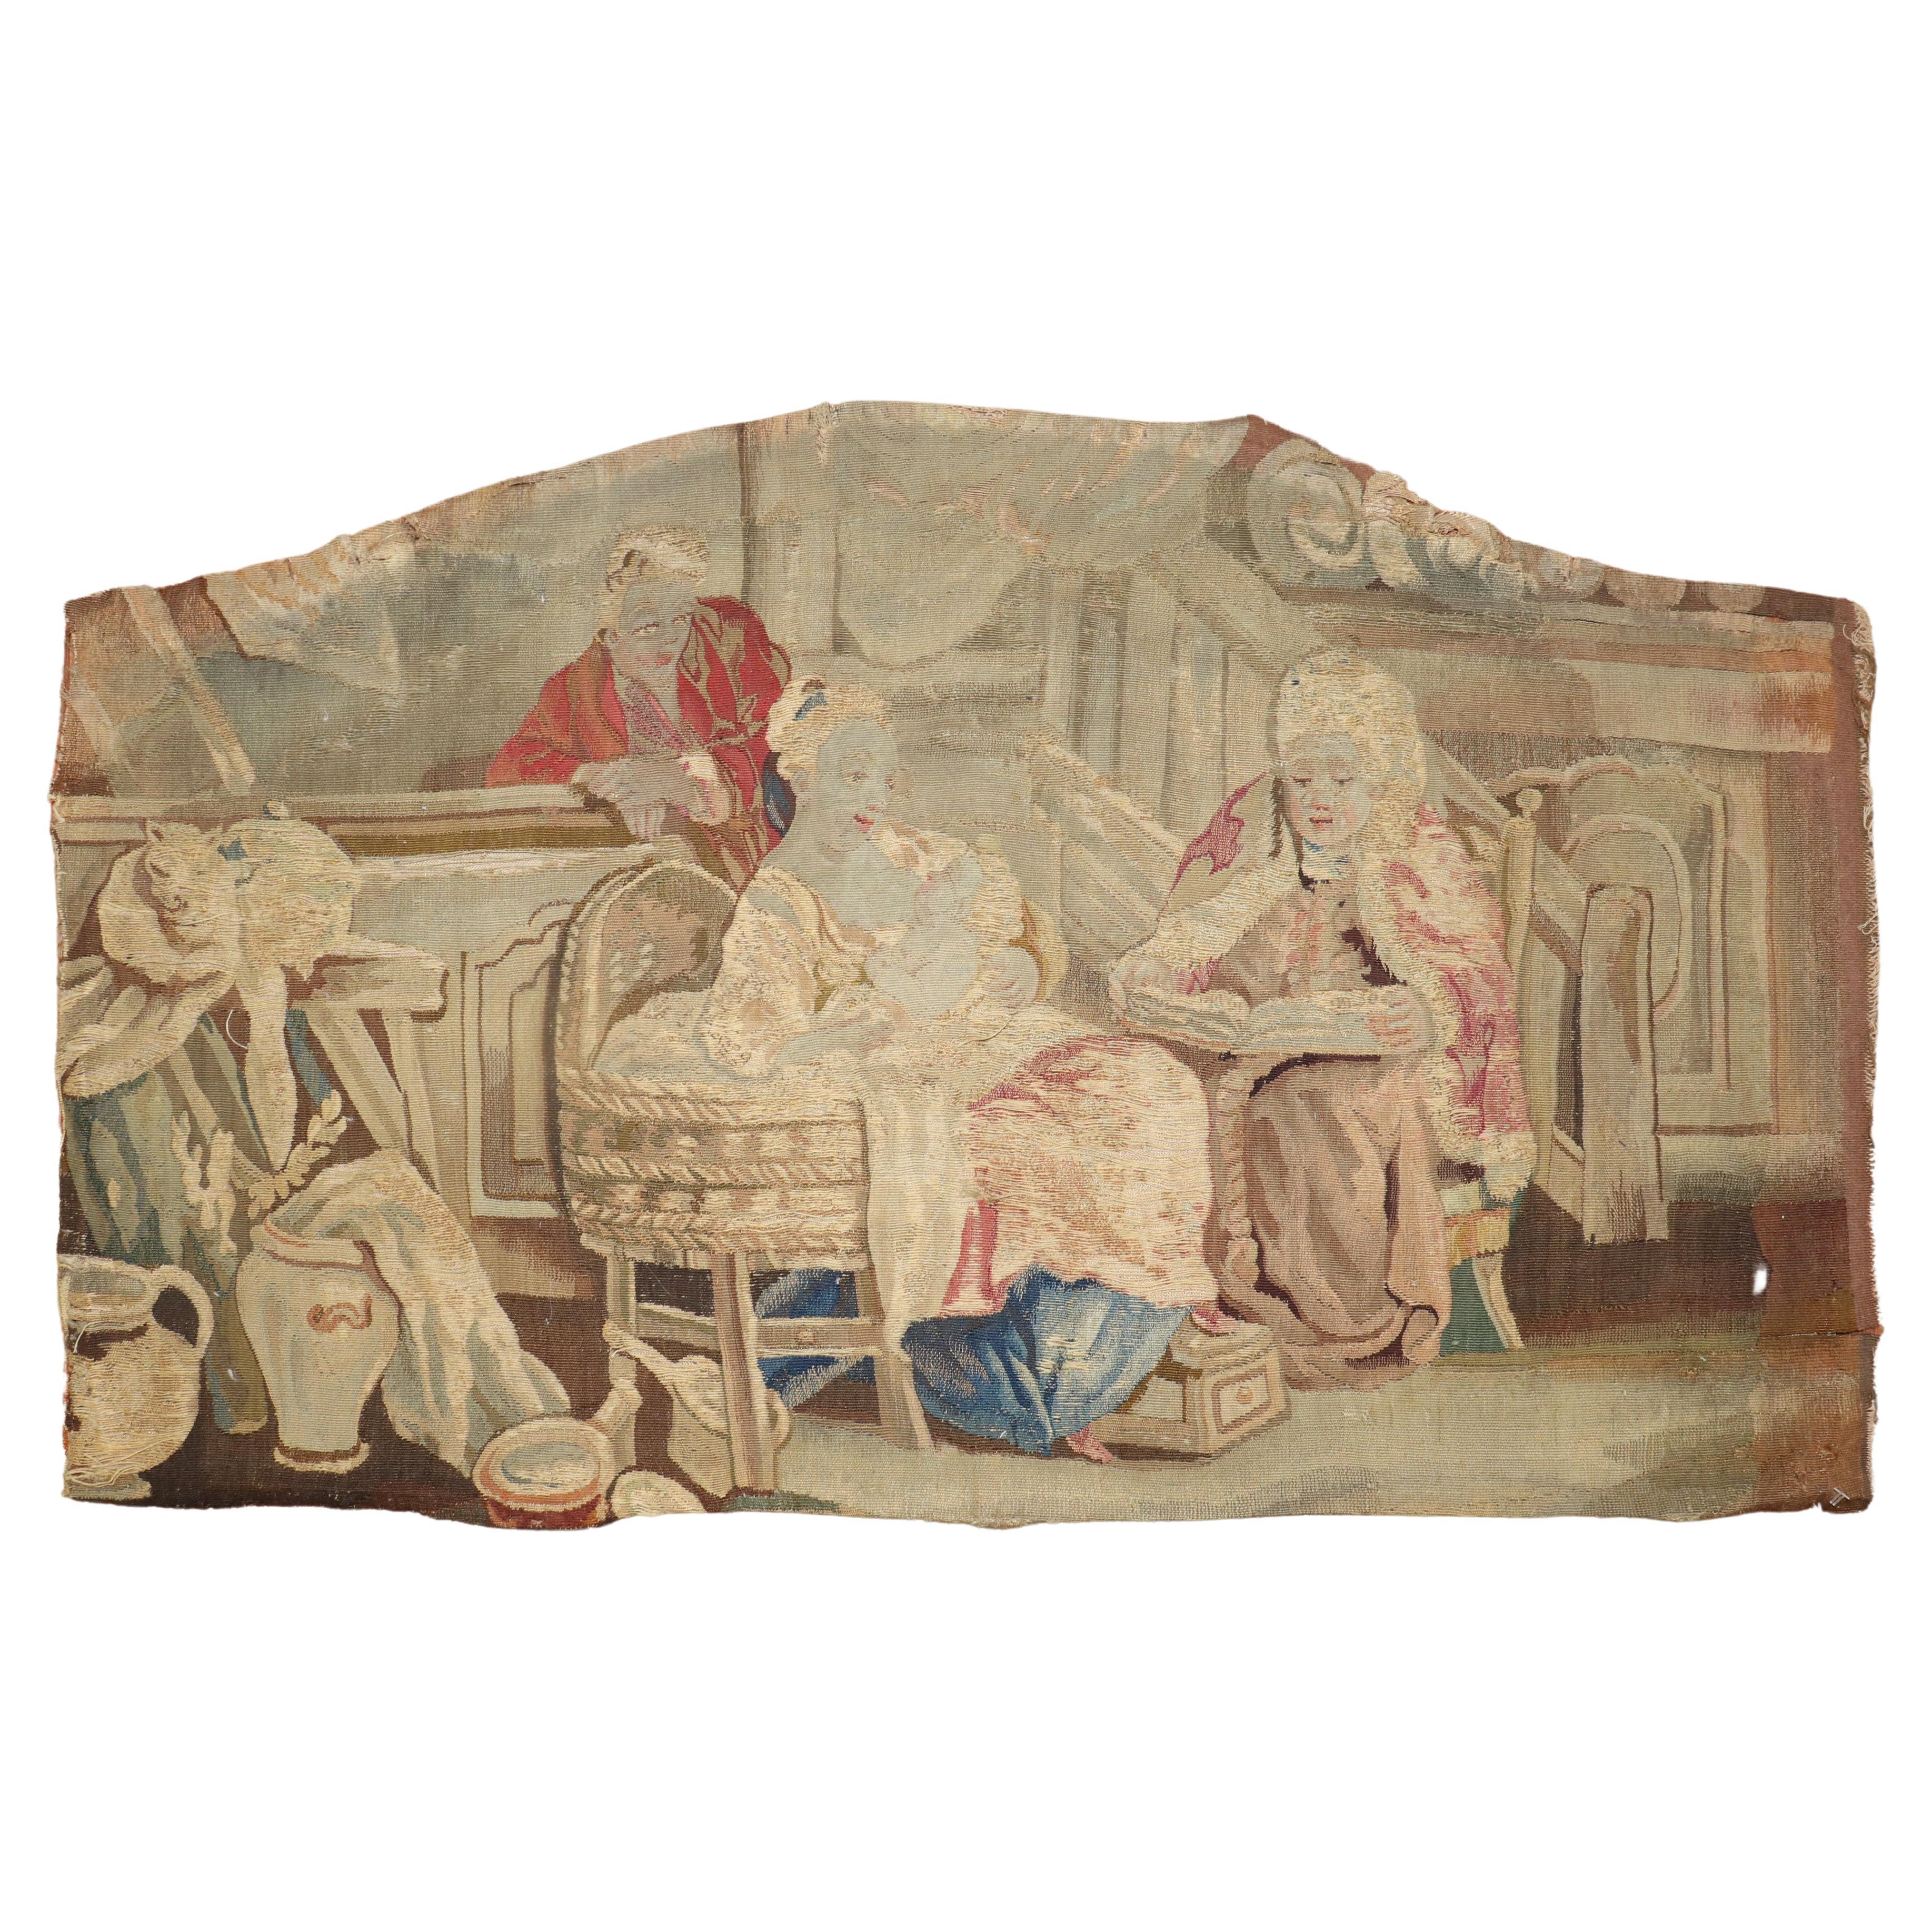 Wandteppichfragment aus dem 18. Jahrhundert